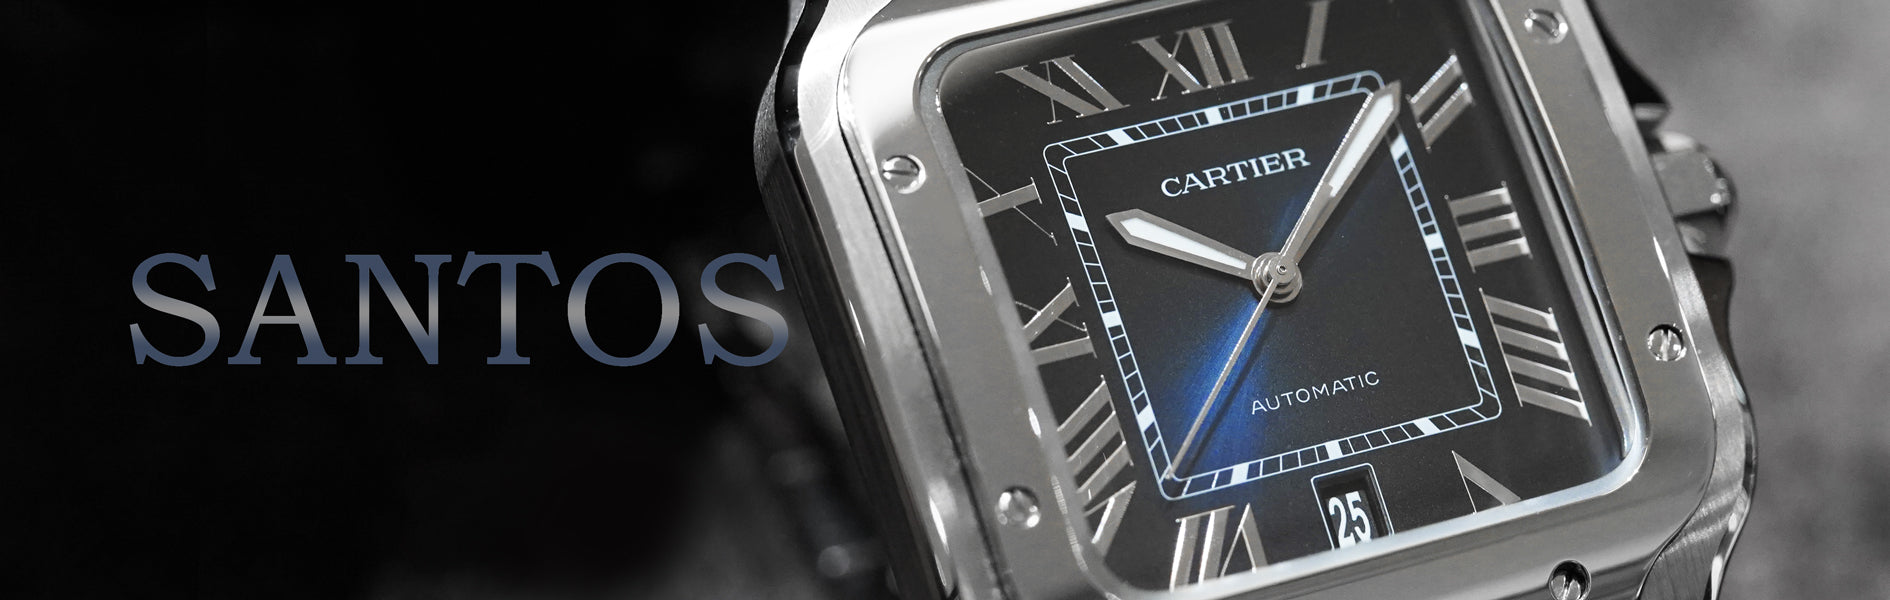 カルティエ サントスシリーズ在庫一覧 | ブランド腕時計専門店ムーンフェイズ通販サイト